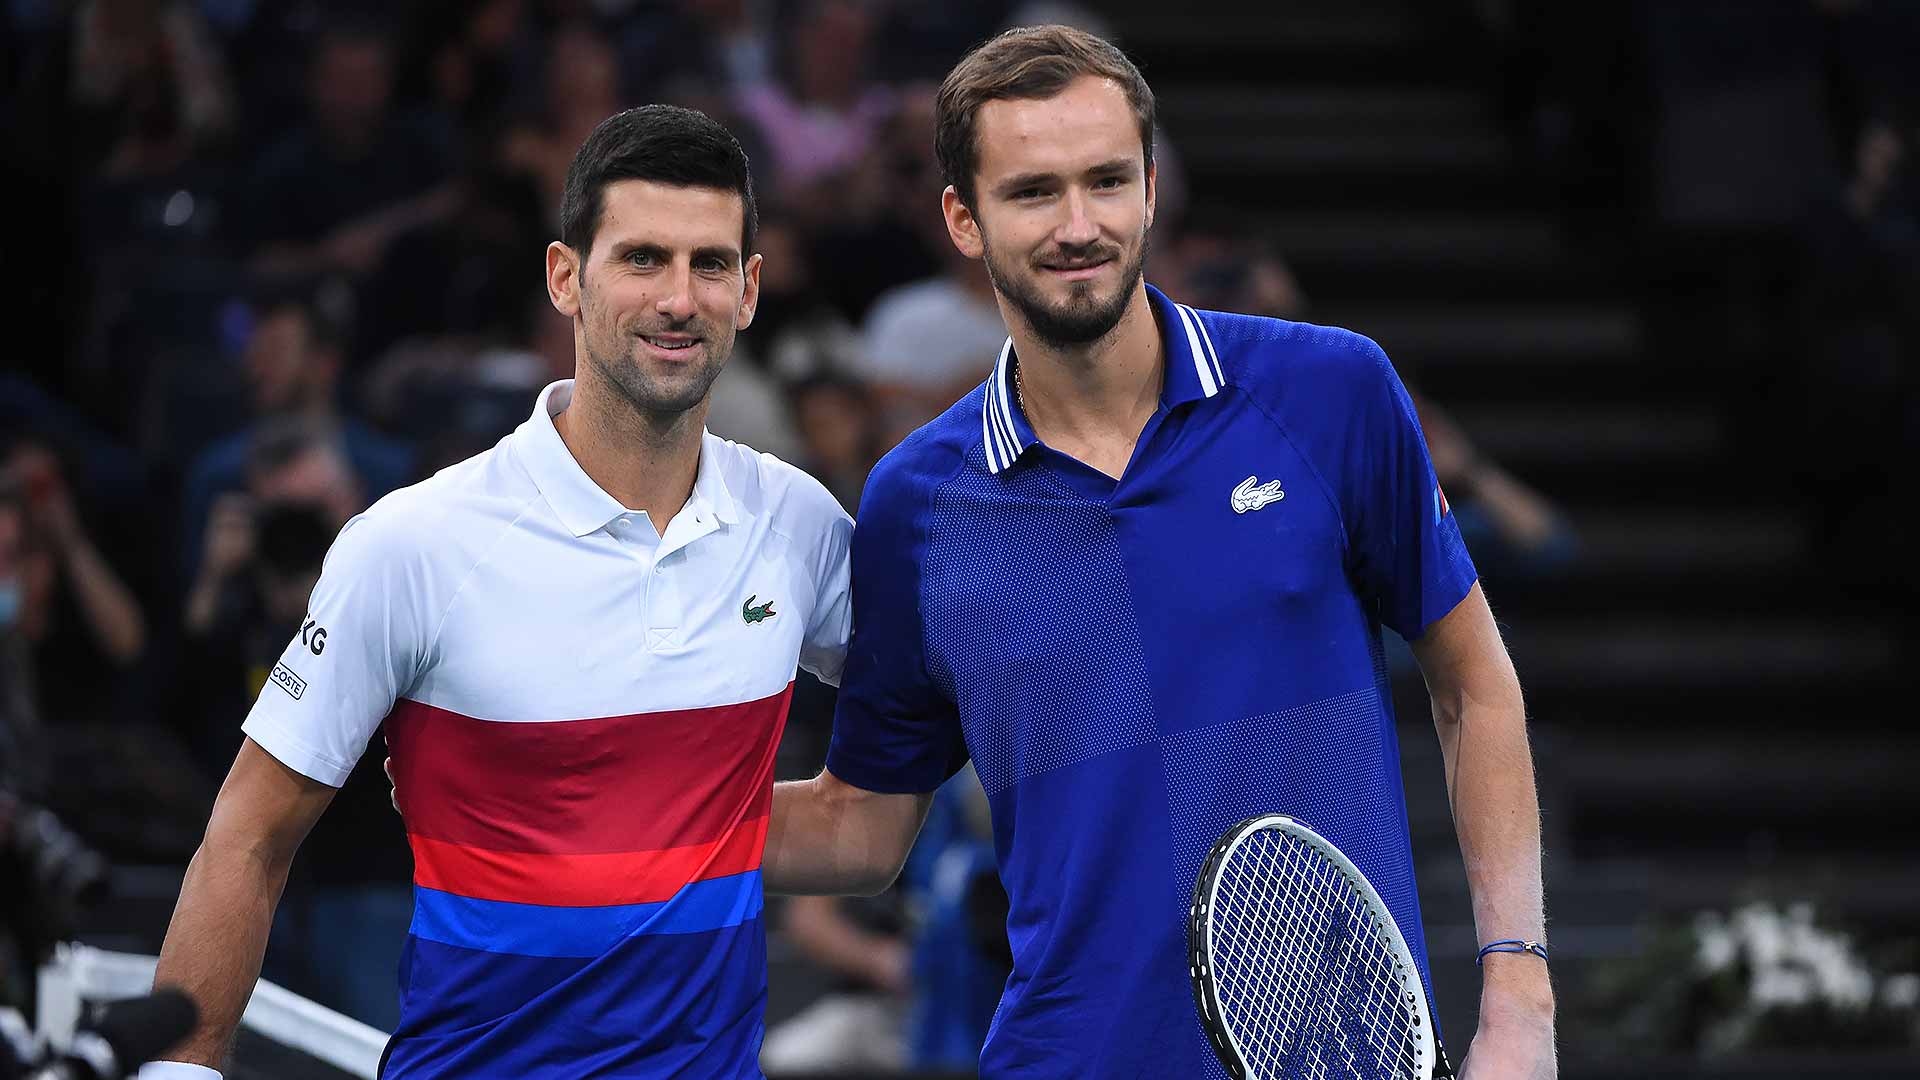 Novak Djokovic leads Daniil Medvedev 6-4 in their ATP Head2Head series.